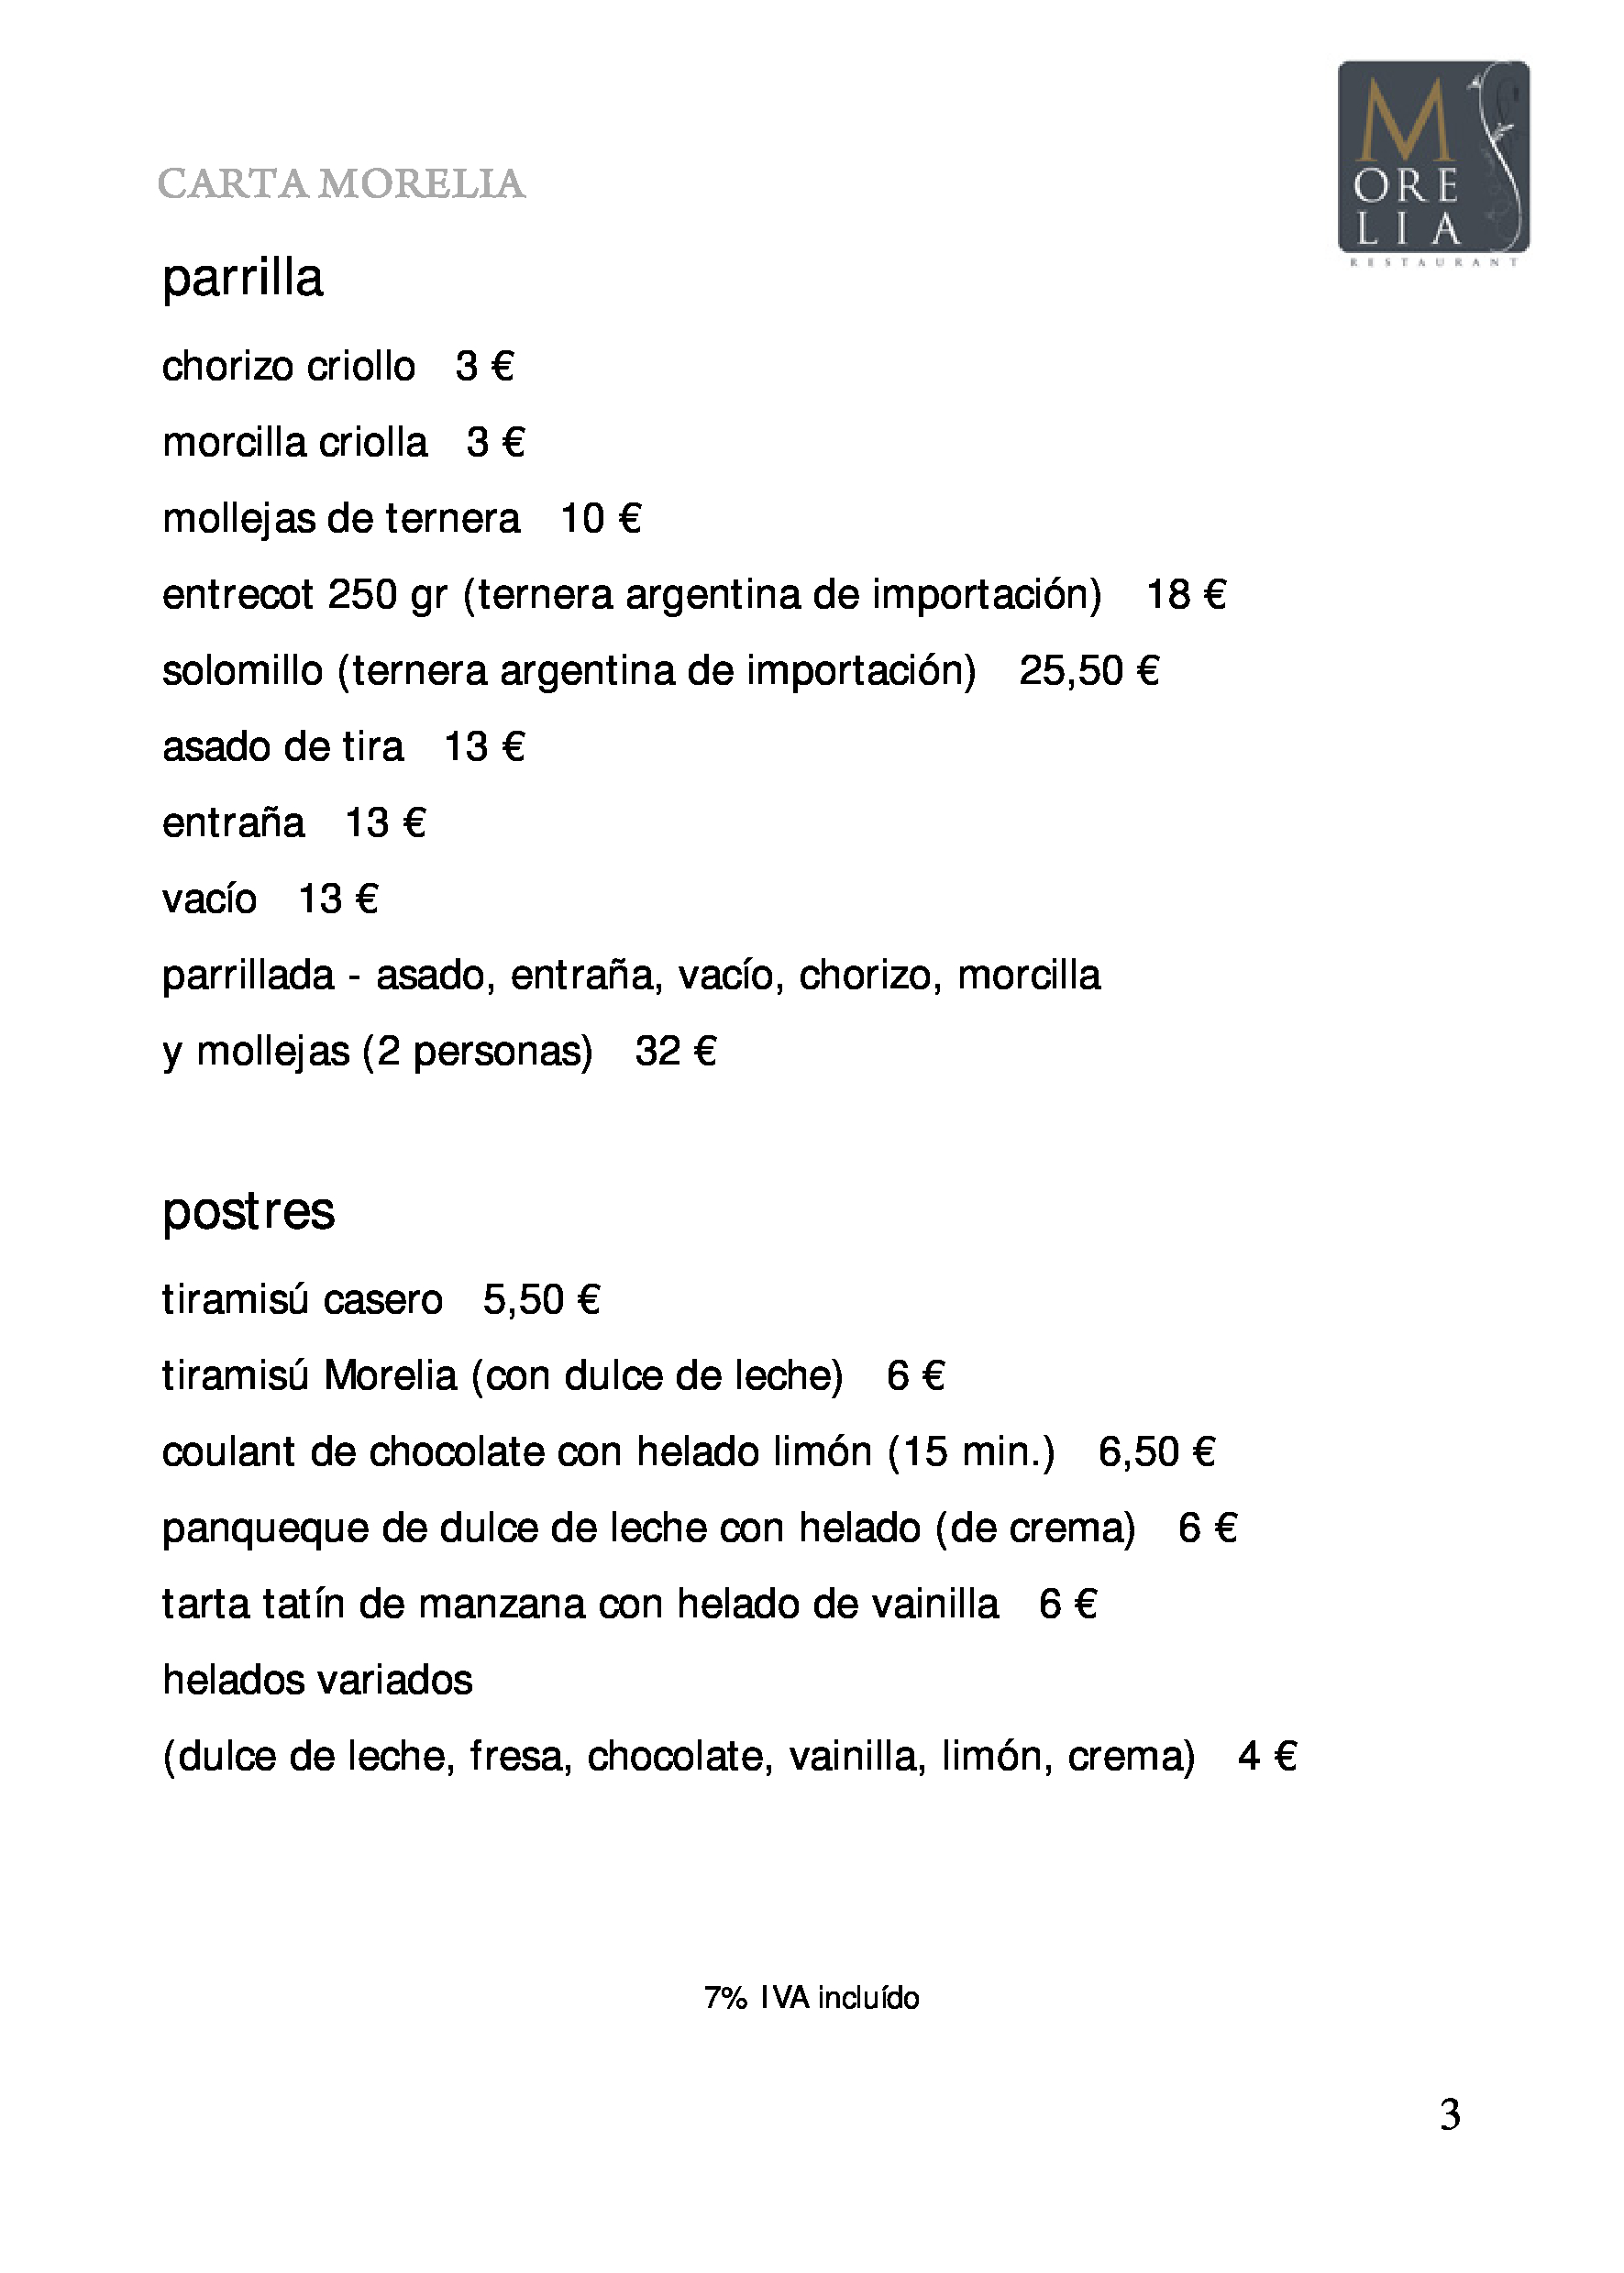 Morelia restaurant Carta